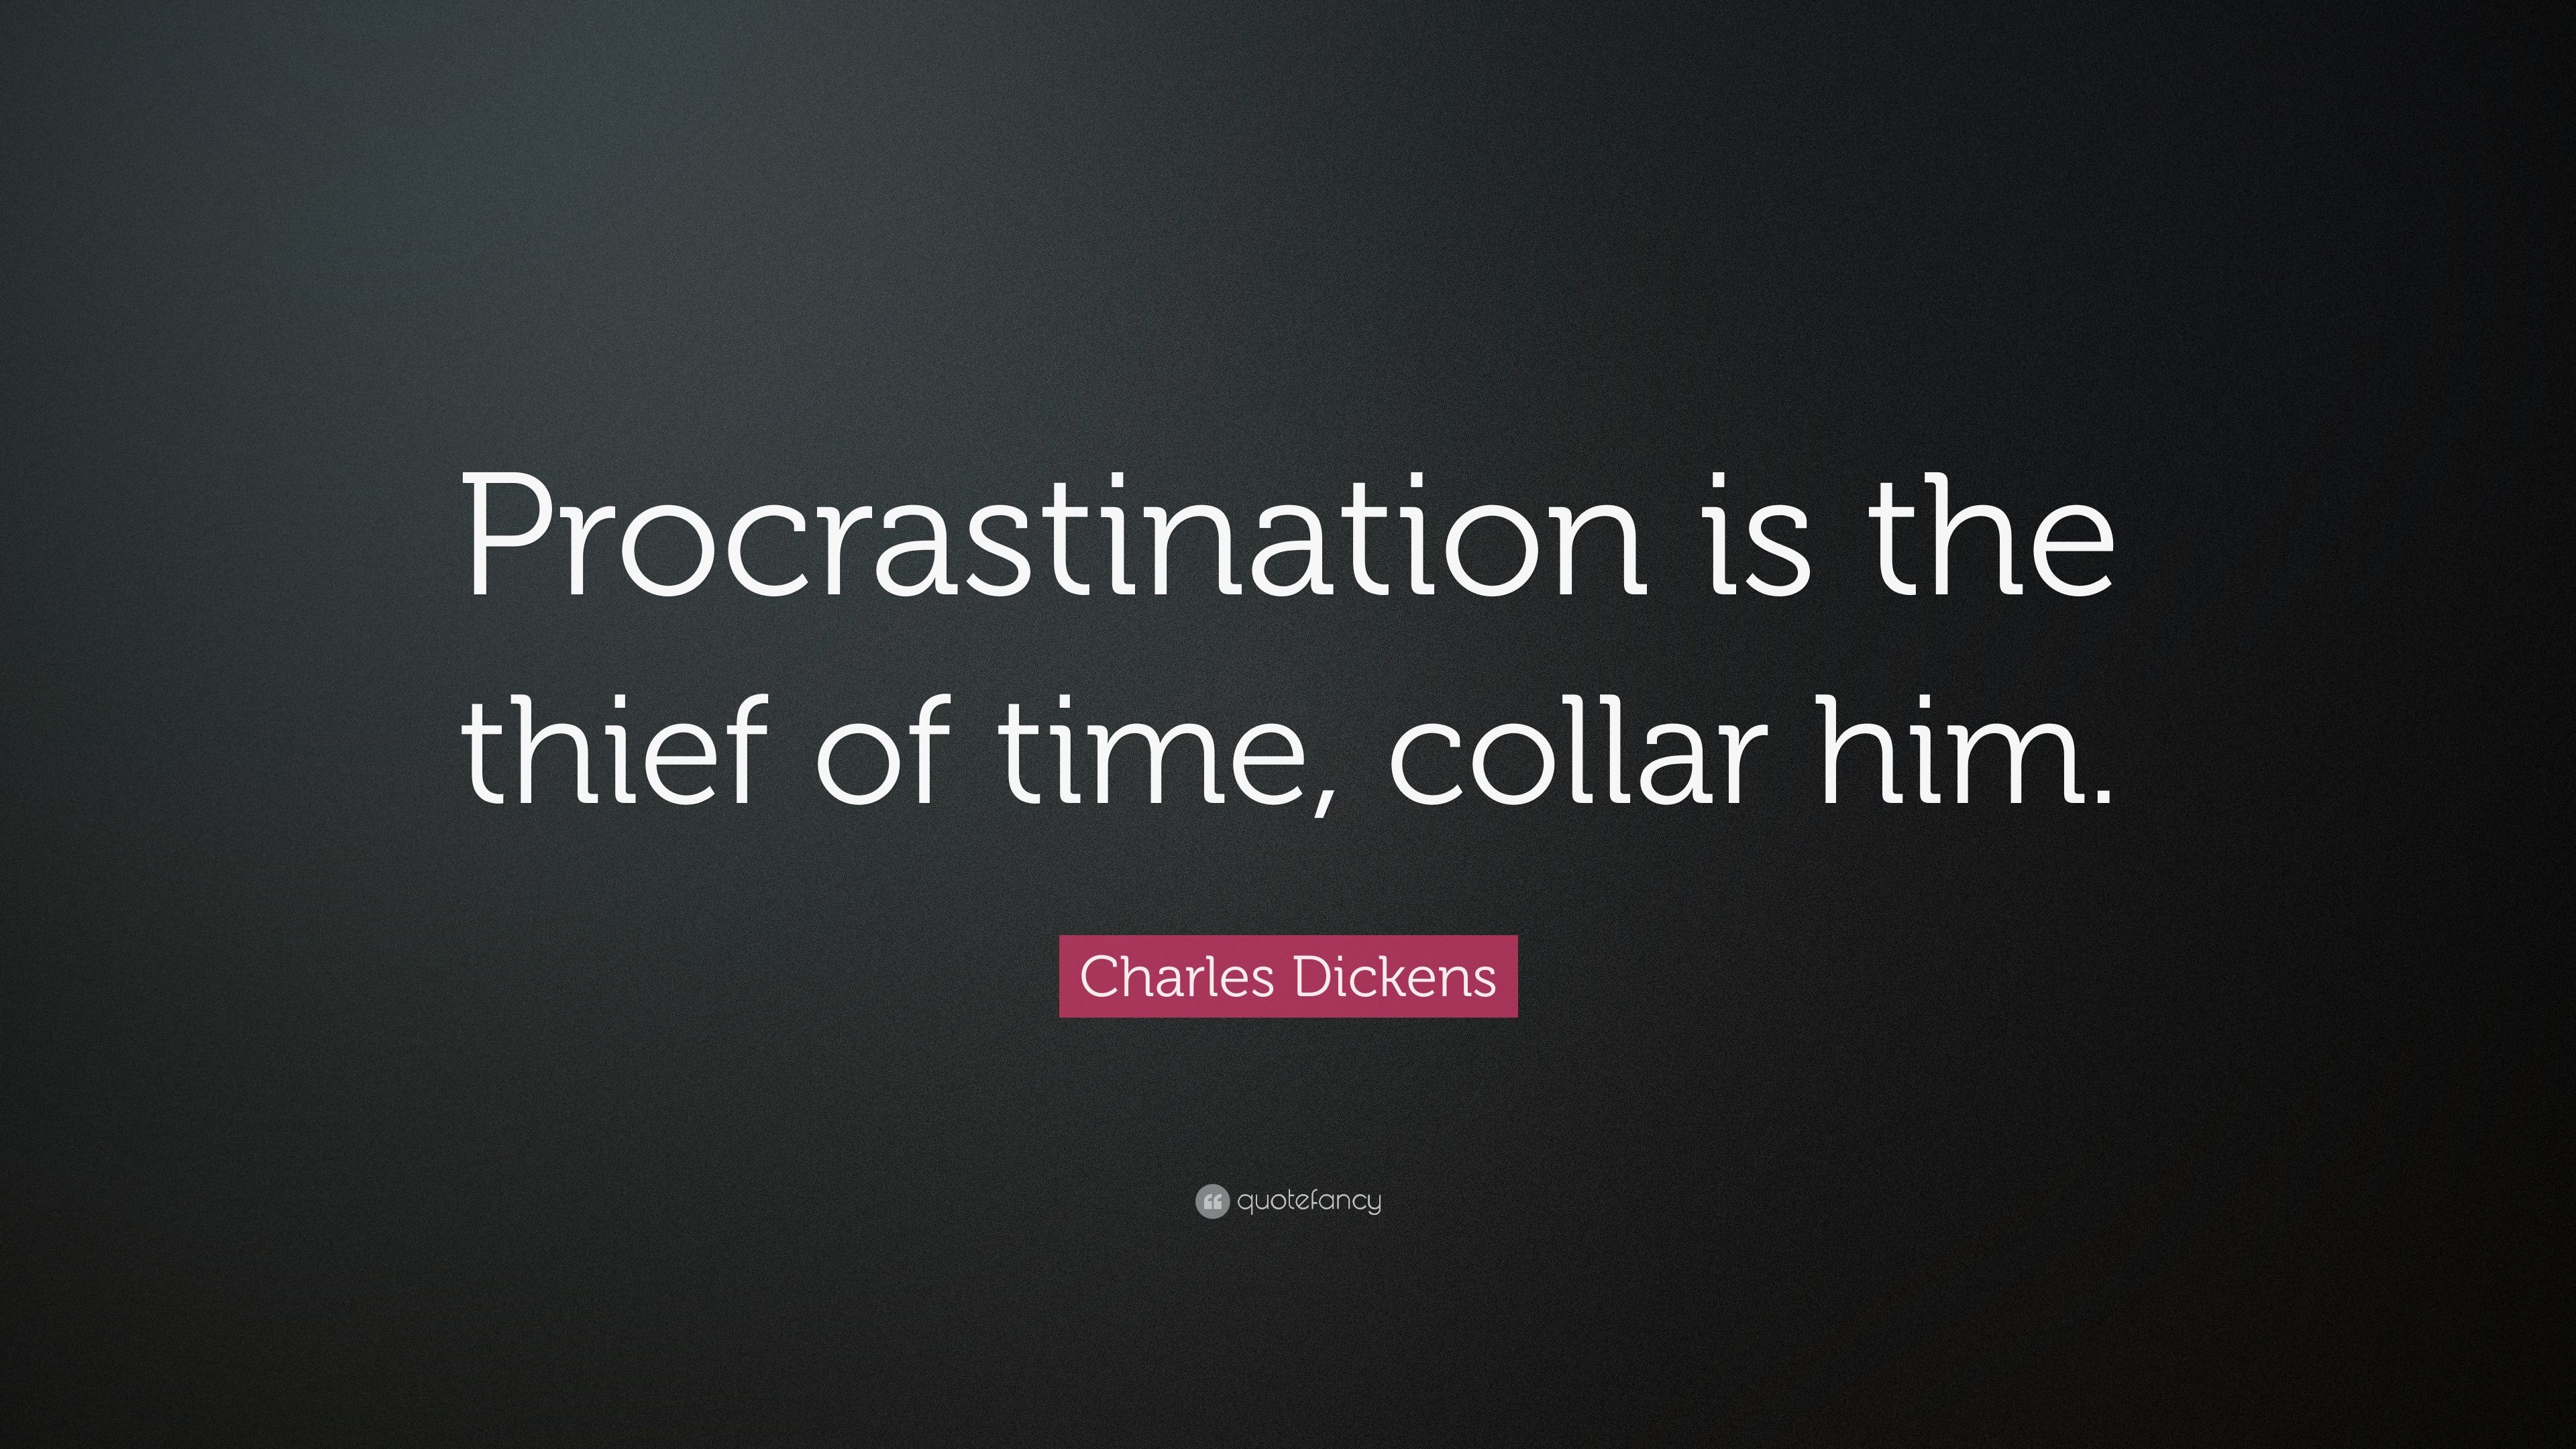 Procrastination Wallpaper. Procrastination Wallpaper, Procrastination Funny Wallpaper and Quotes Procrastination Wallpaper